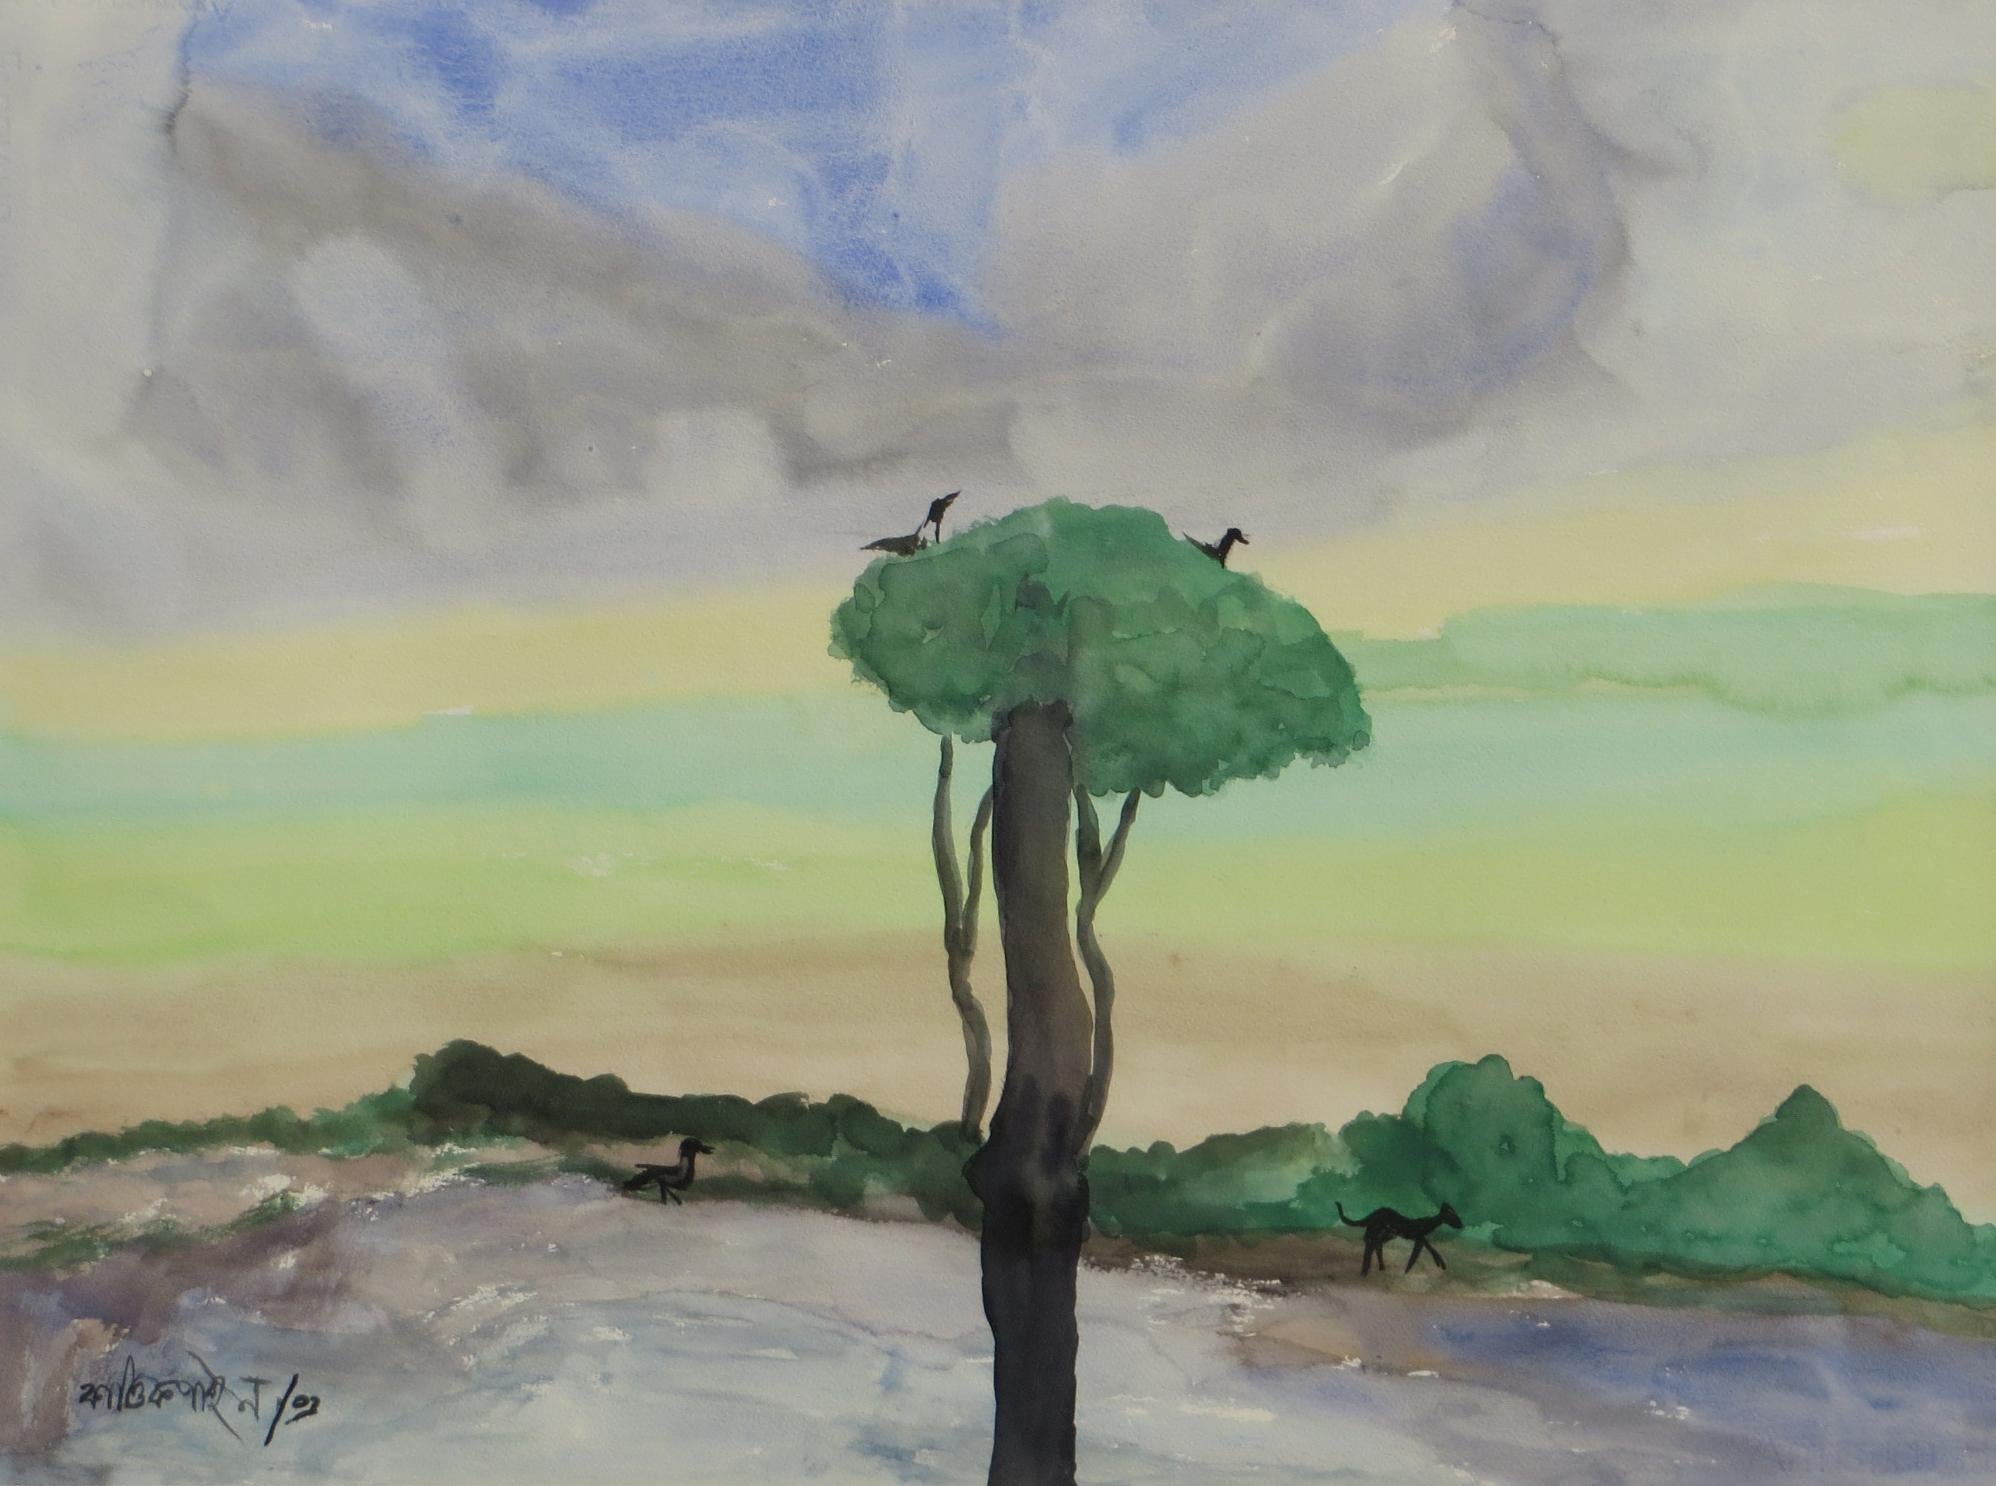 Landscape, Birds, Trees, Watercolor on paper, Mauve, Green, Blue colors